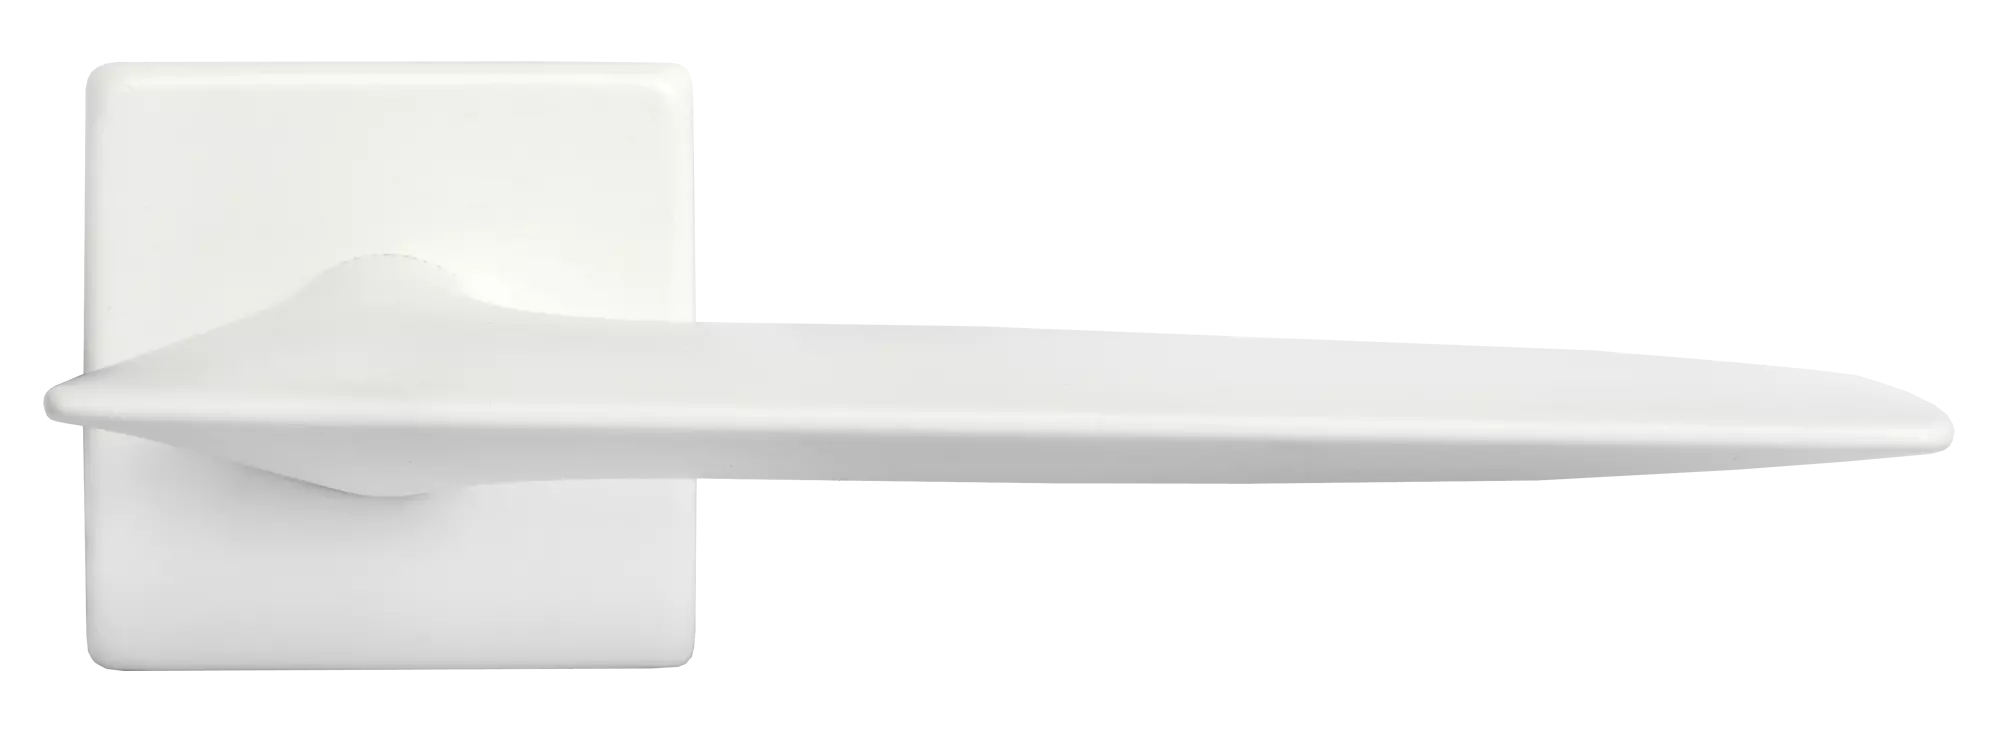 GALACTIC S5 BIA, ручка дверная, цвет - белый фото купить в Рязани